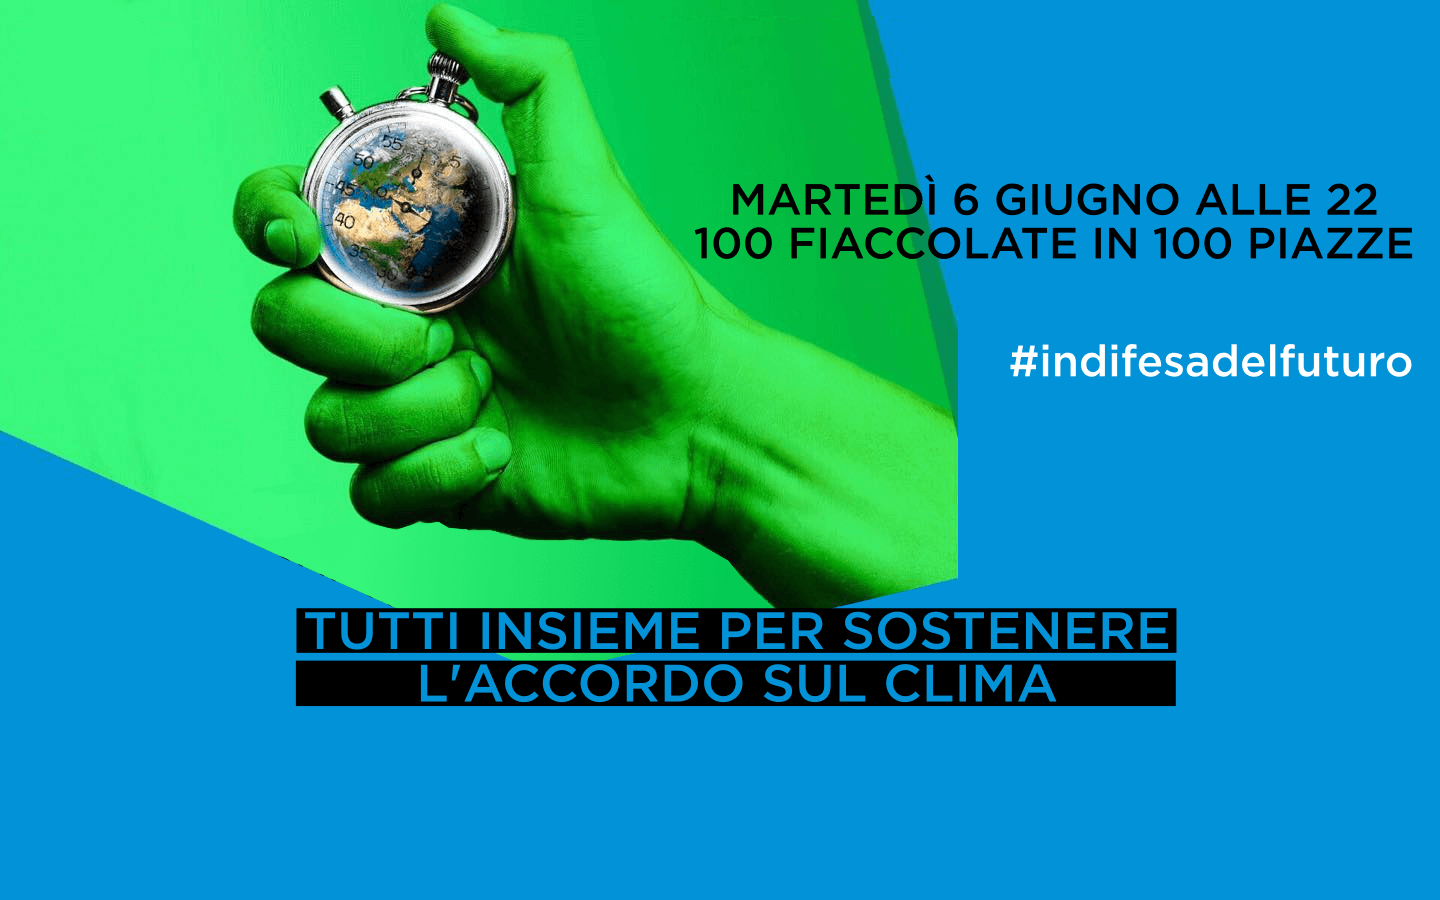 Al momento stai visualizzando Tutti insieme per sostenere l’accordo sul clima, martedì 6 giugno in 100 piazze d’Italia, 100 fiaccolate.